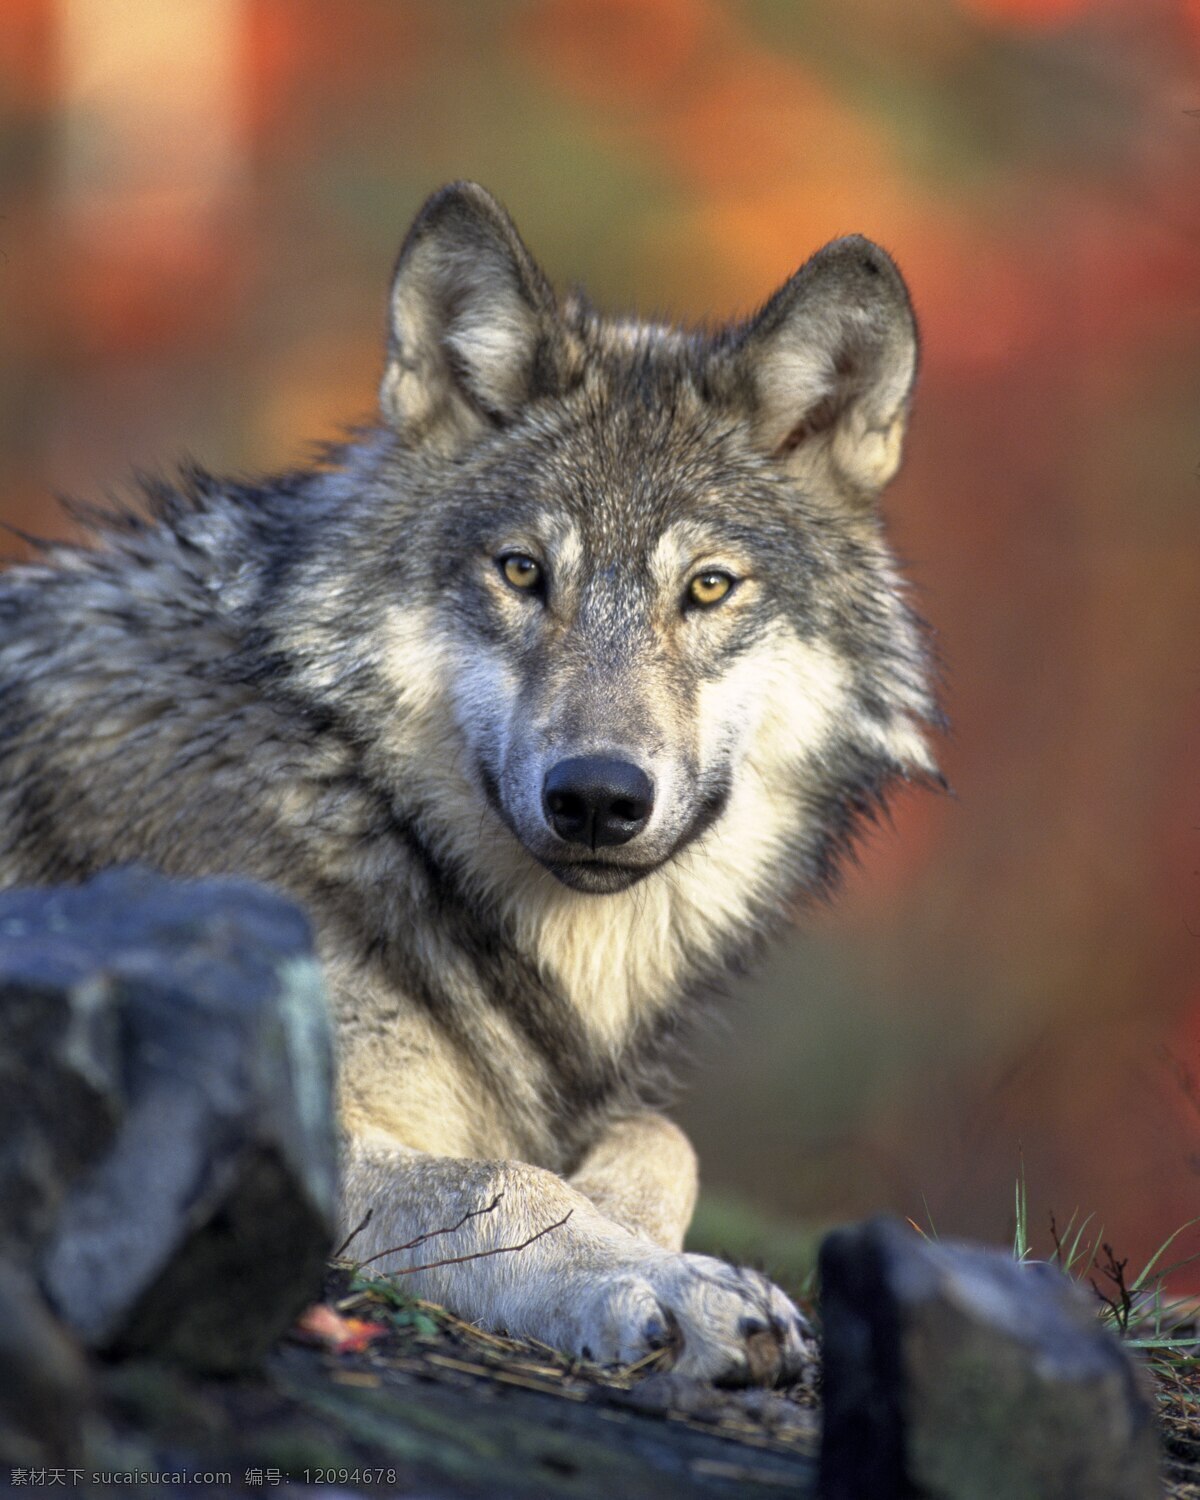 草原狼摄影 草原狼 摄影图片 凶猛野兽 动物 野狼图片 凶猛对视 生物世界 野生动物